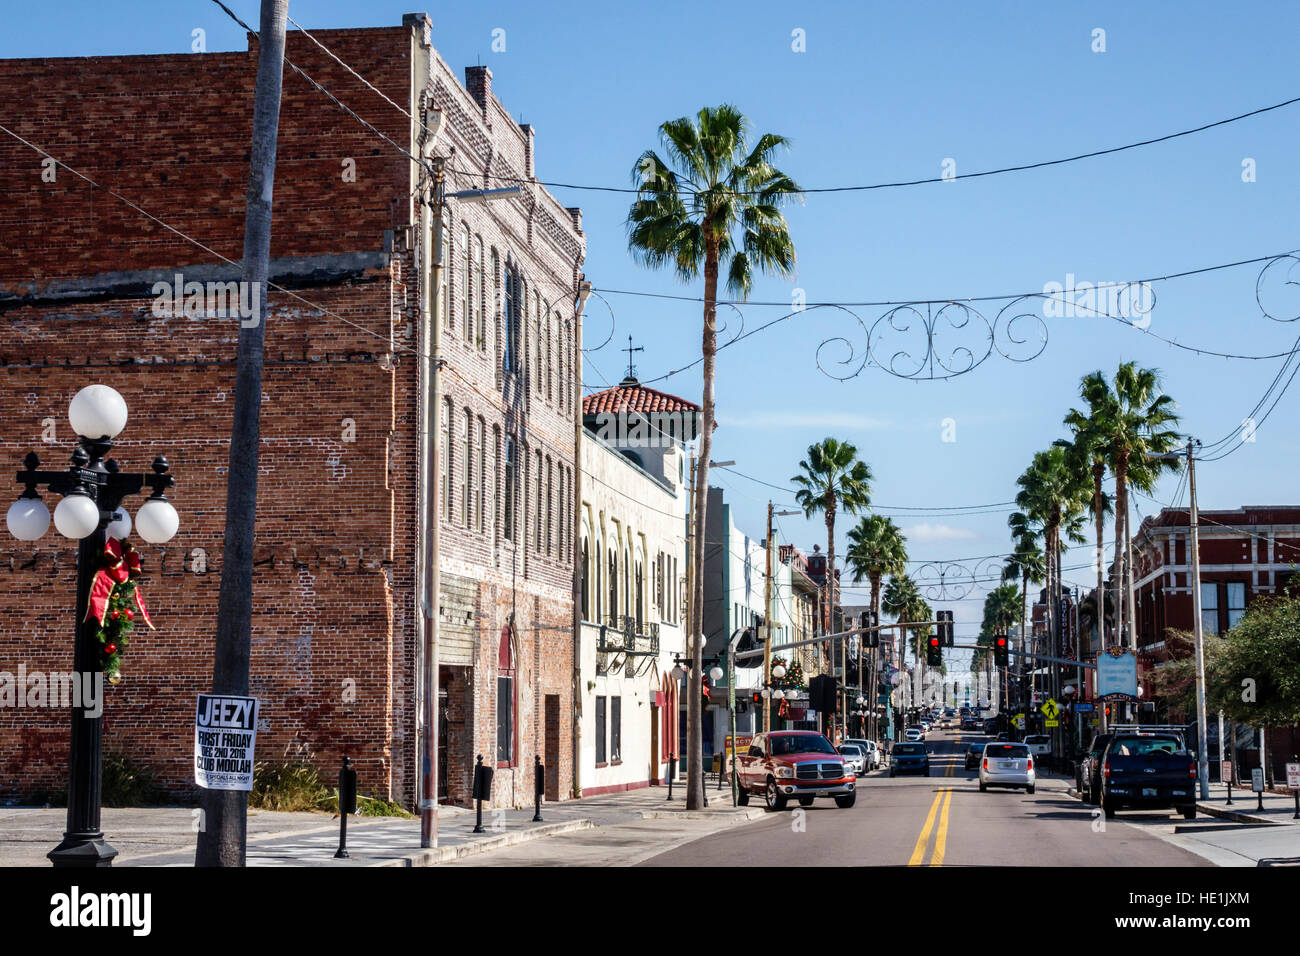 Tampa, Florida, Ybor City, historisches Viertel, 7th Avenue, Straße, FL161129162 Stockfoto